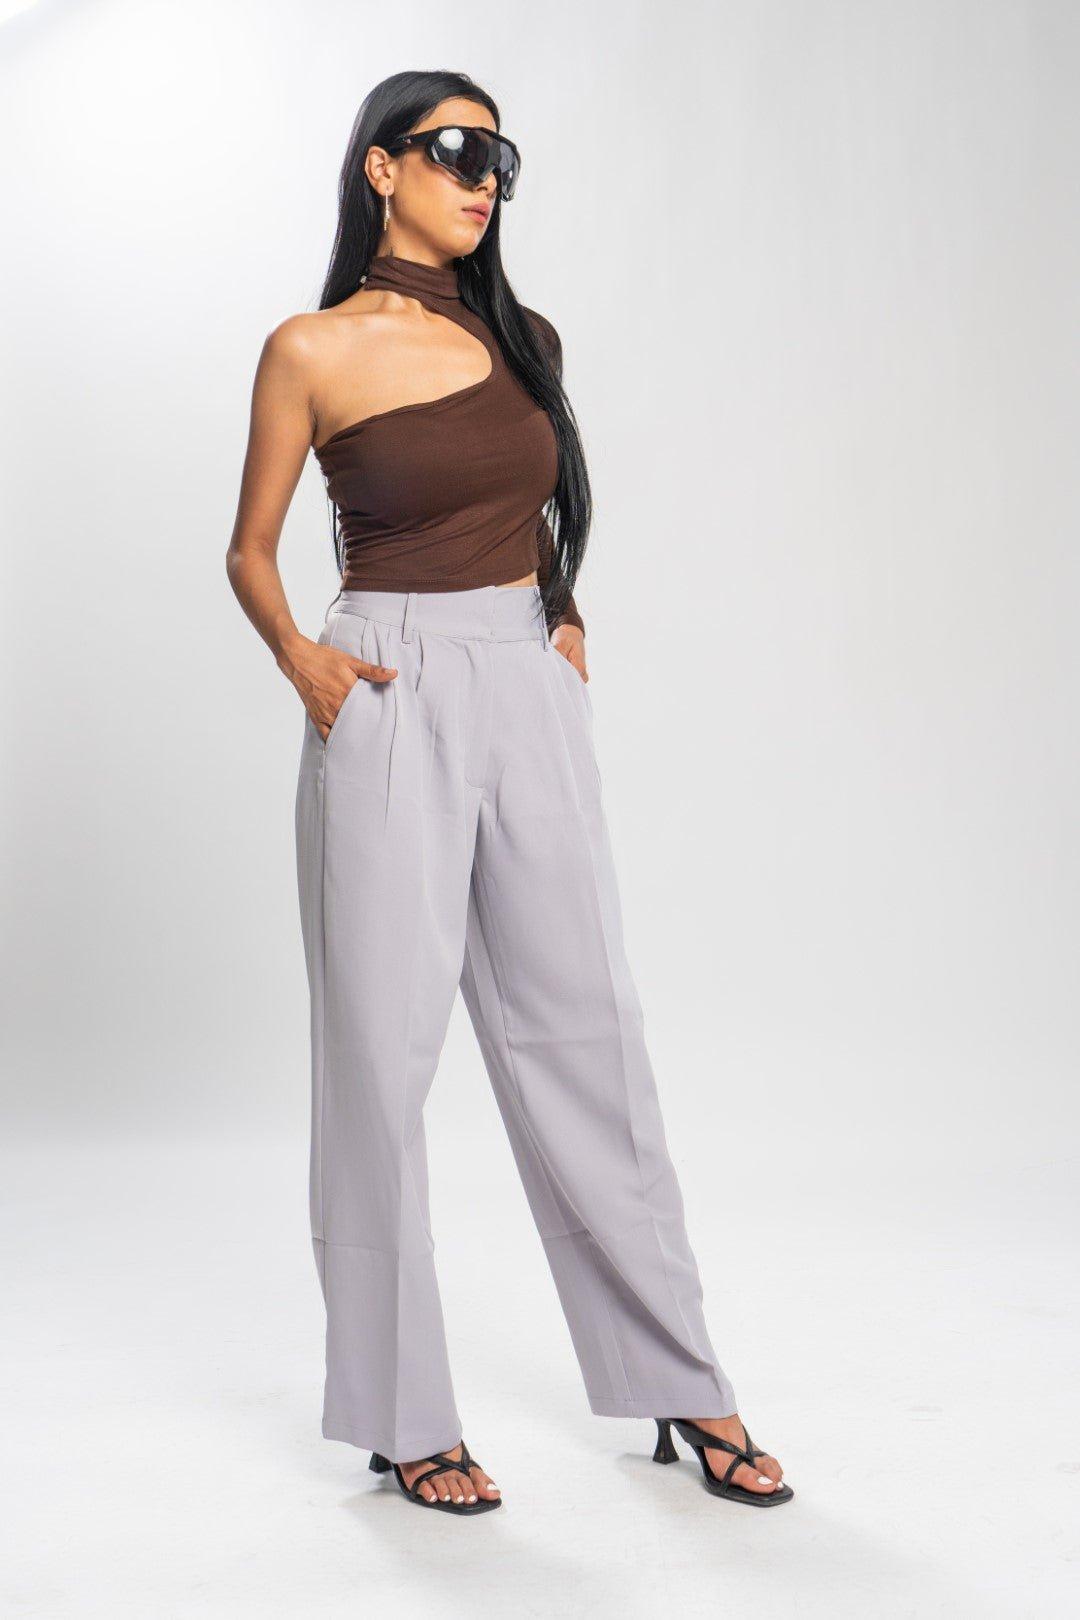 Buy TheBaagiWomen's & Girls' High Waist Korean Baggy Pants A-TR-01 Online  at desertcartINDIA